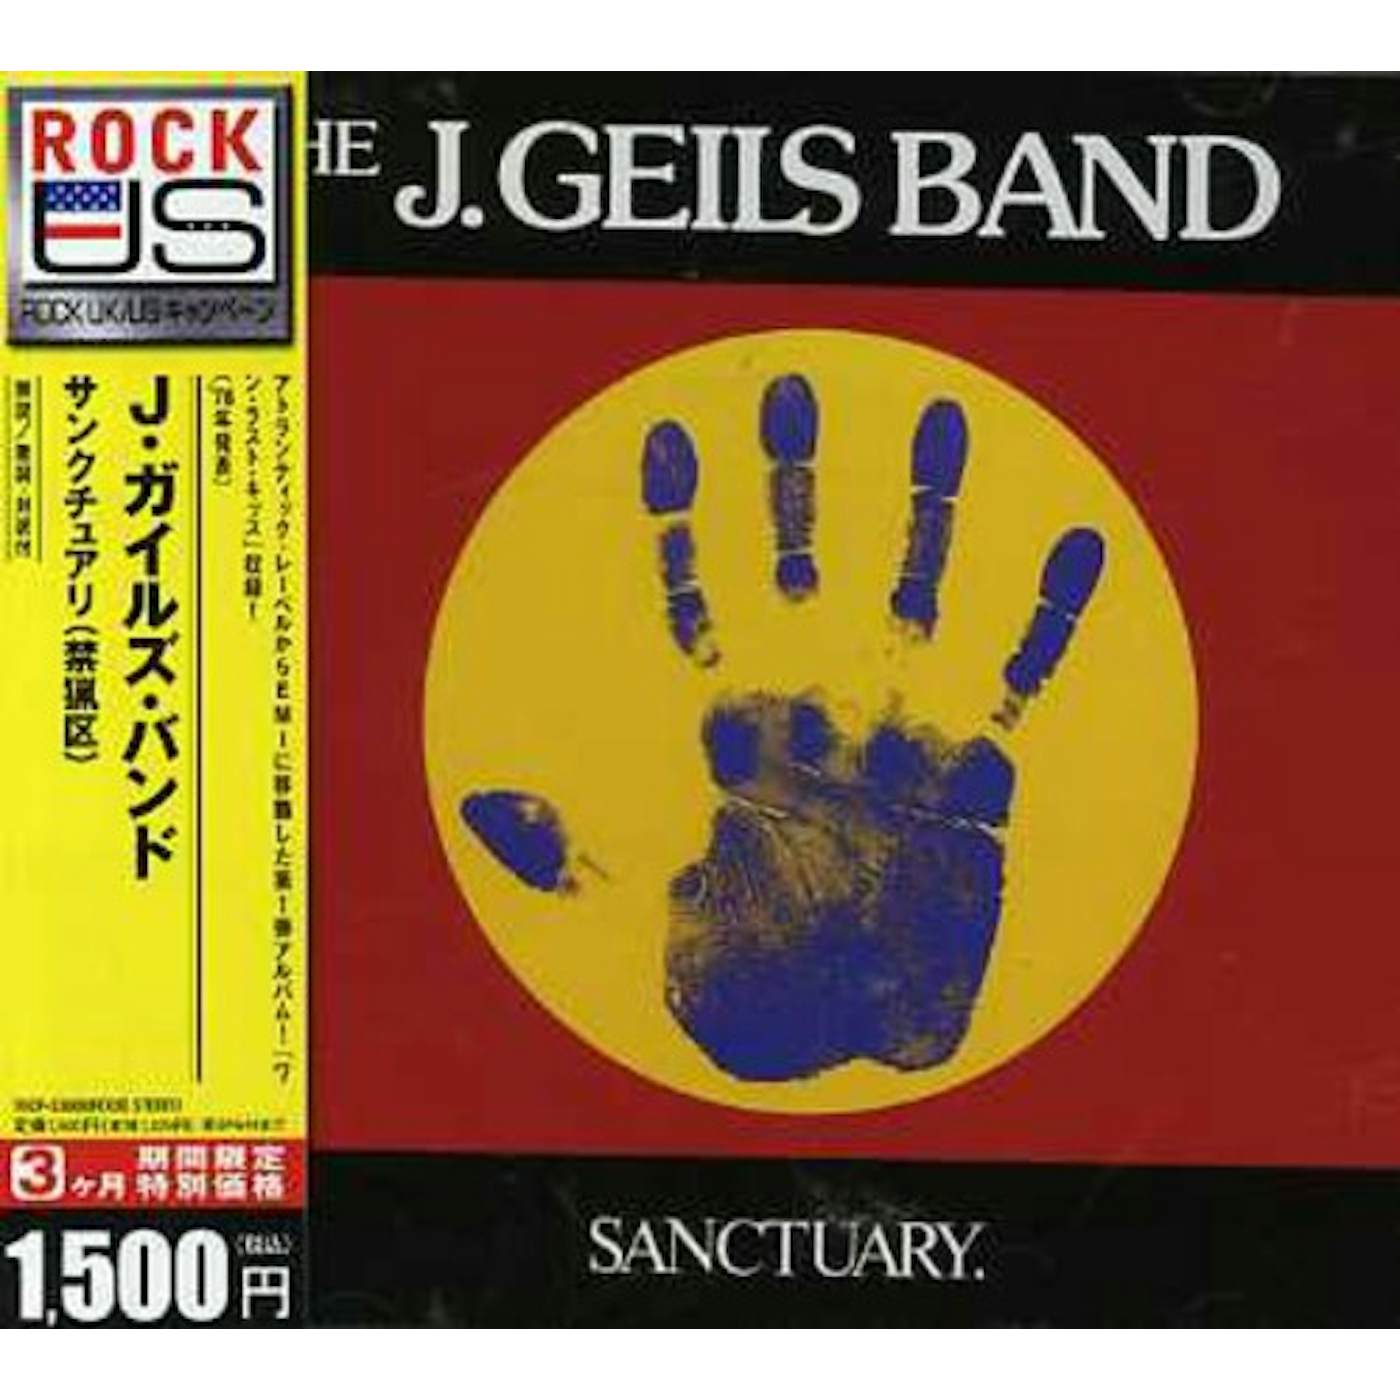 The J. Geils Band SANCTUARI CD